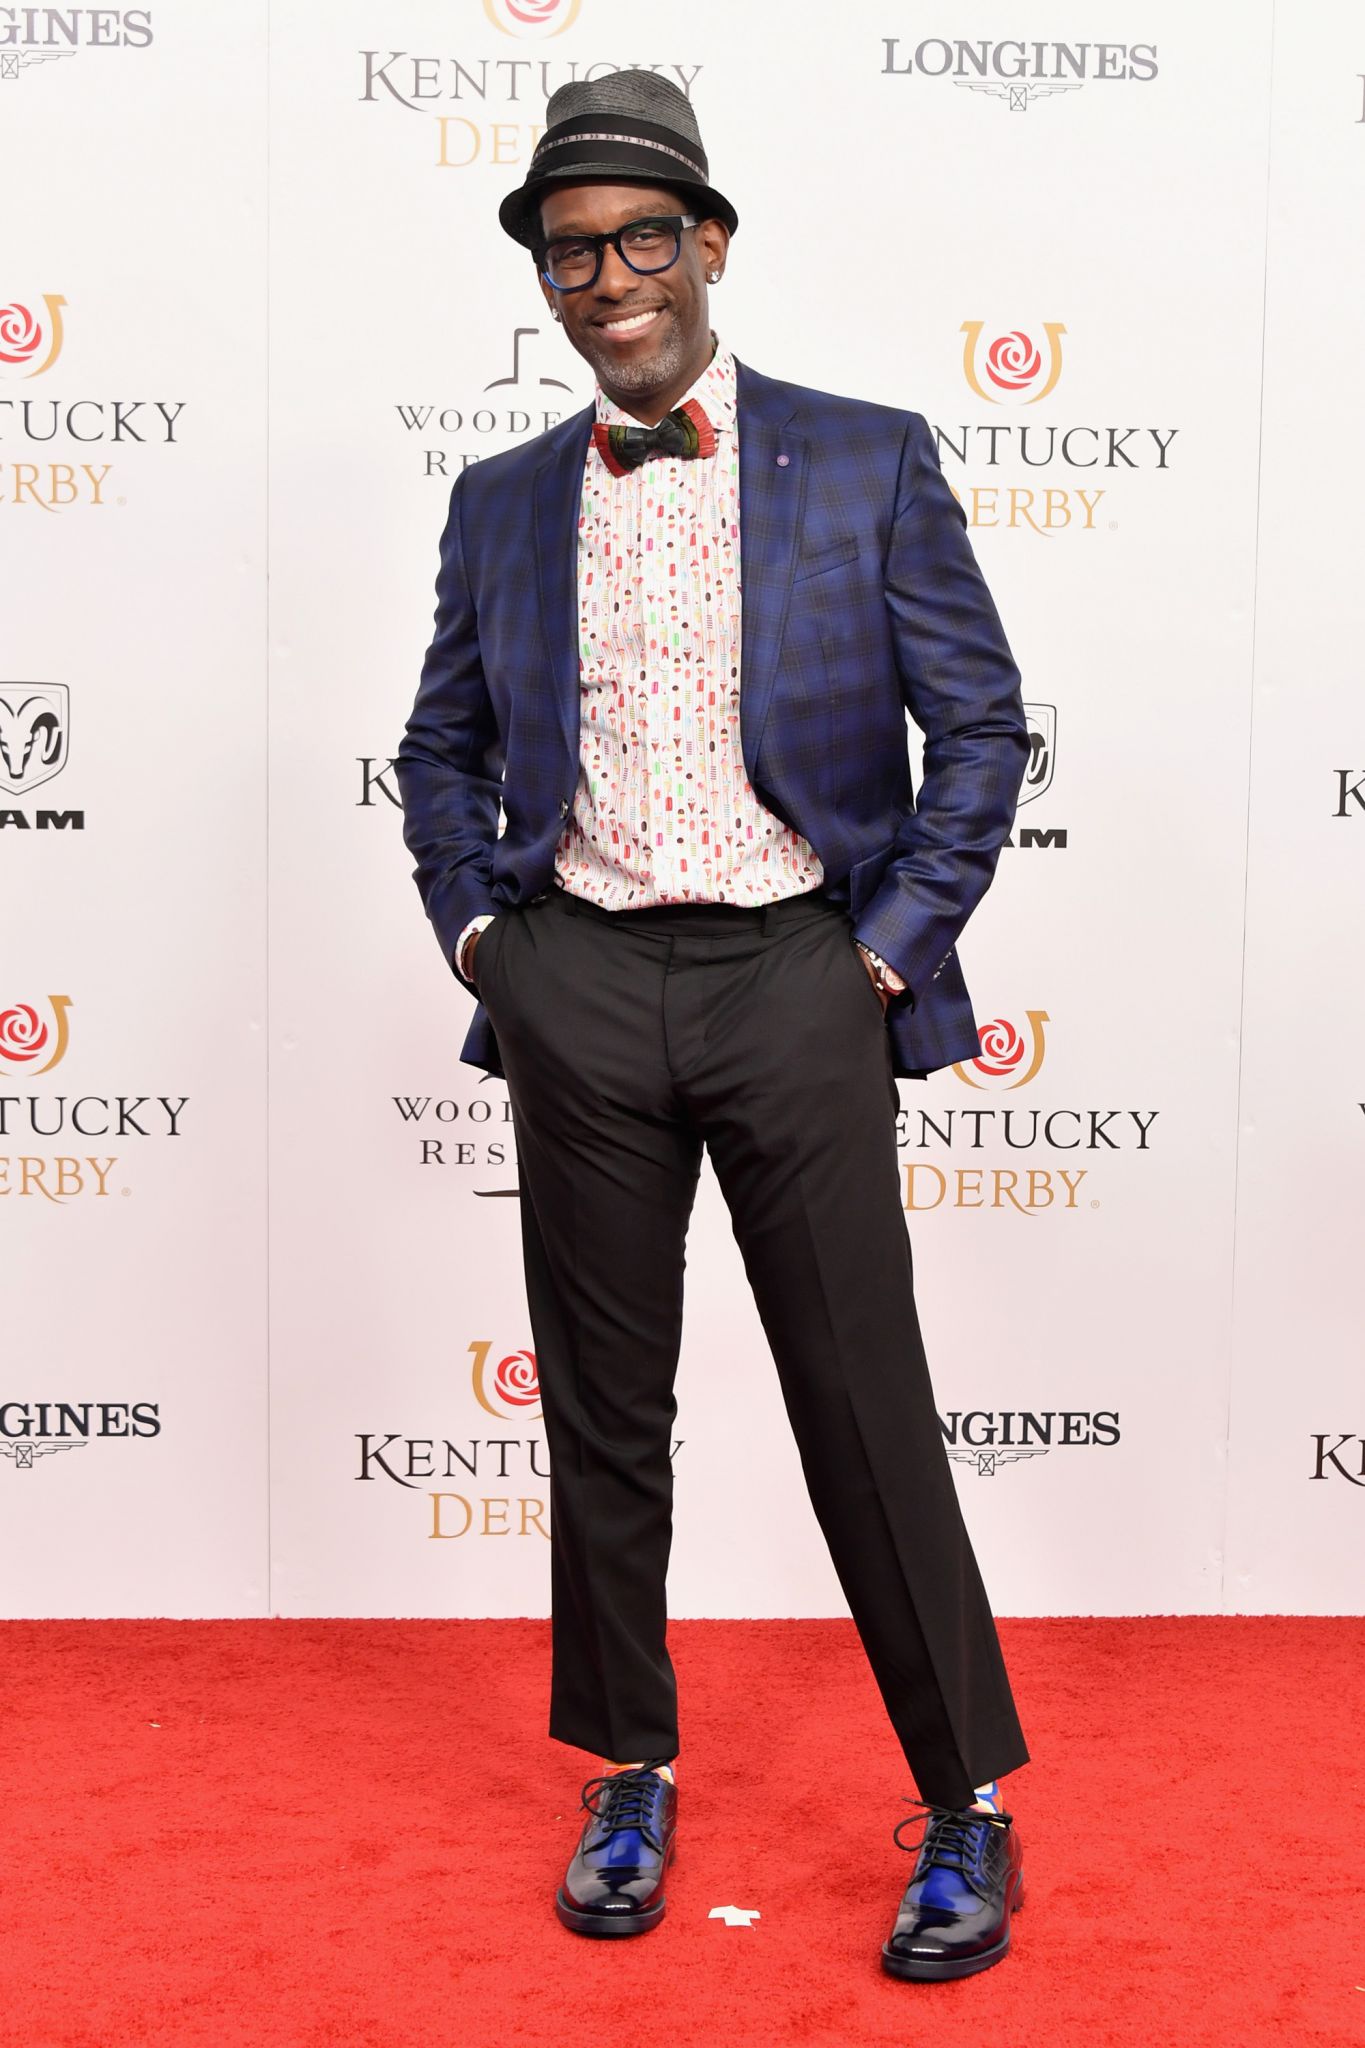 Kentucky Derby menswear: 2018 men's fashion includes wooden bow ties